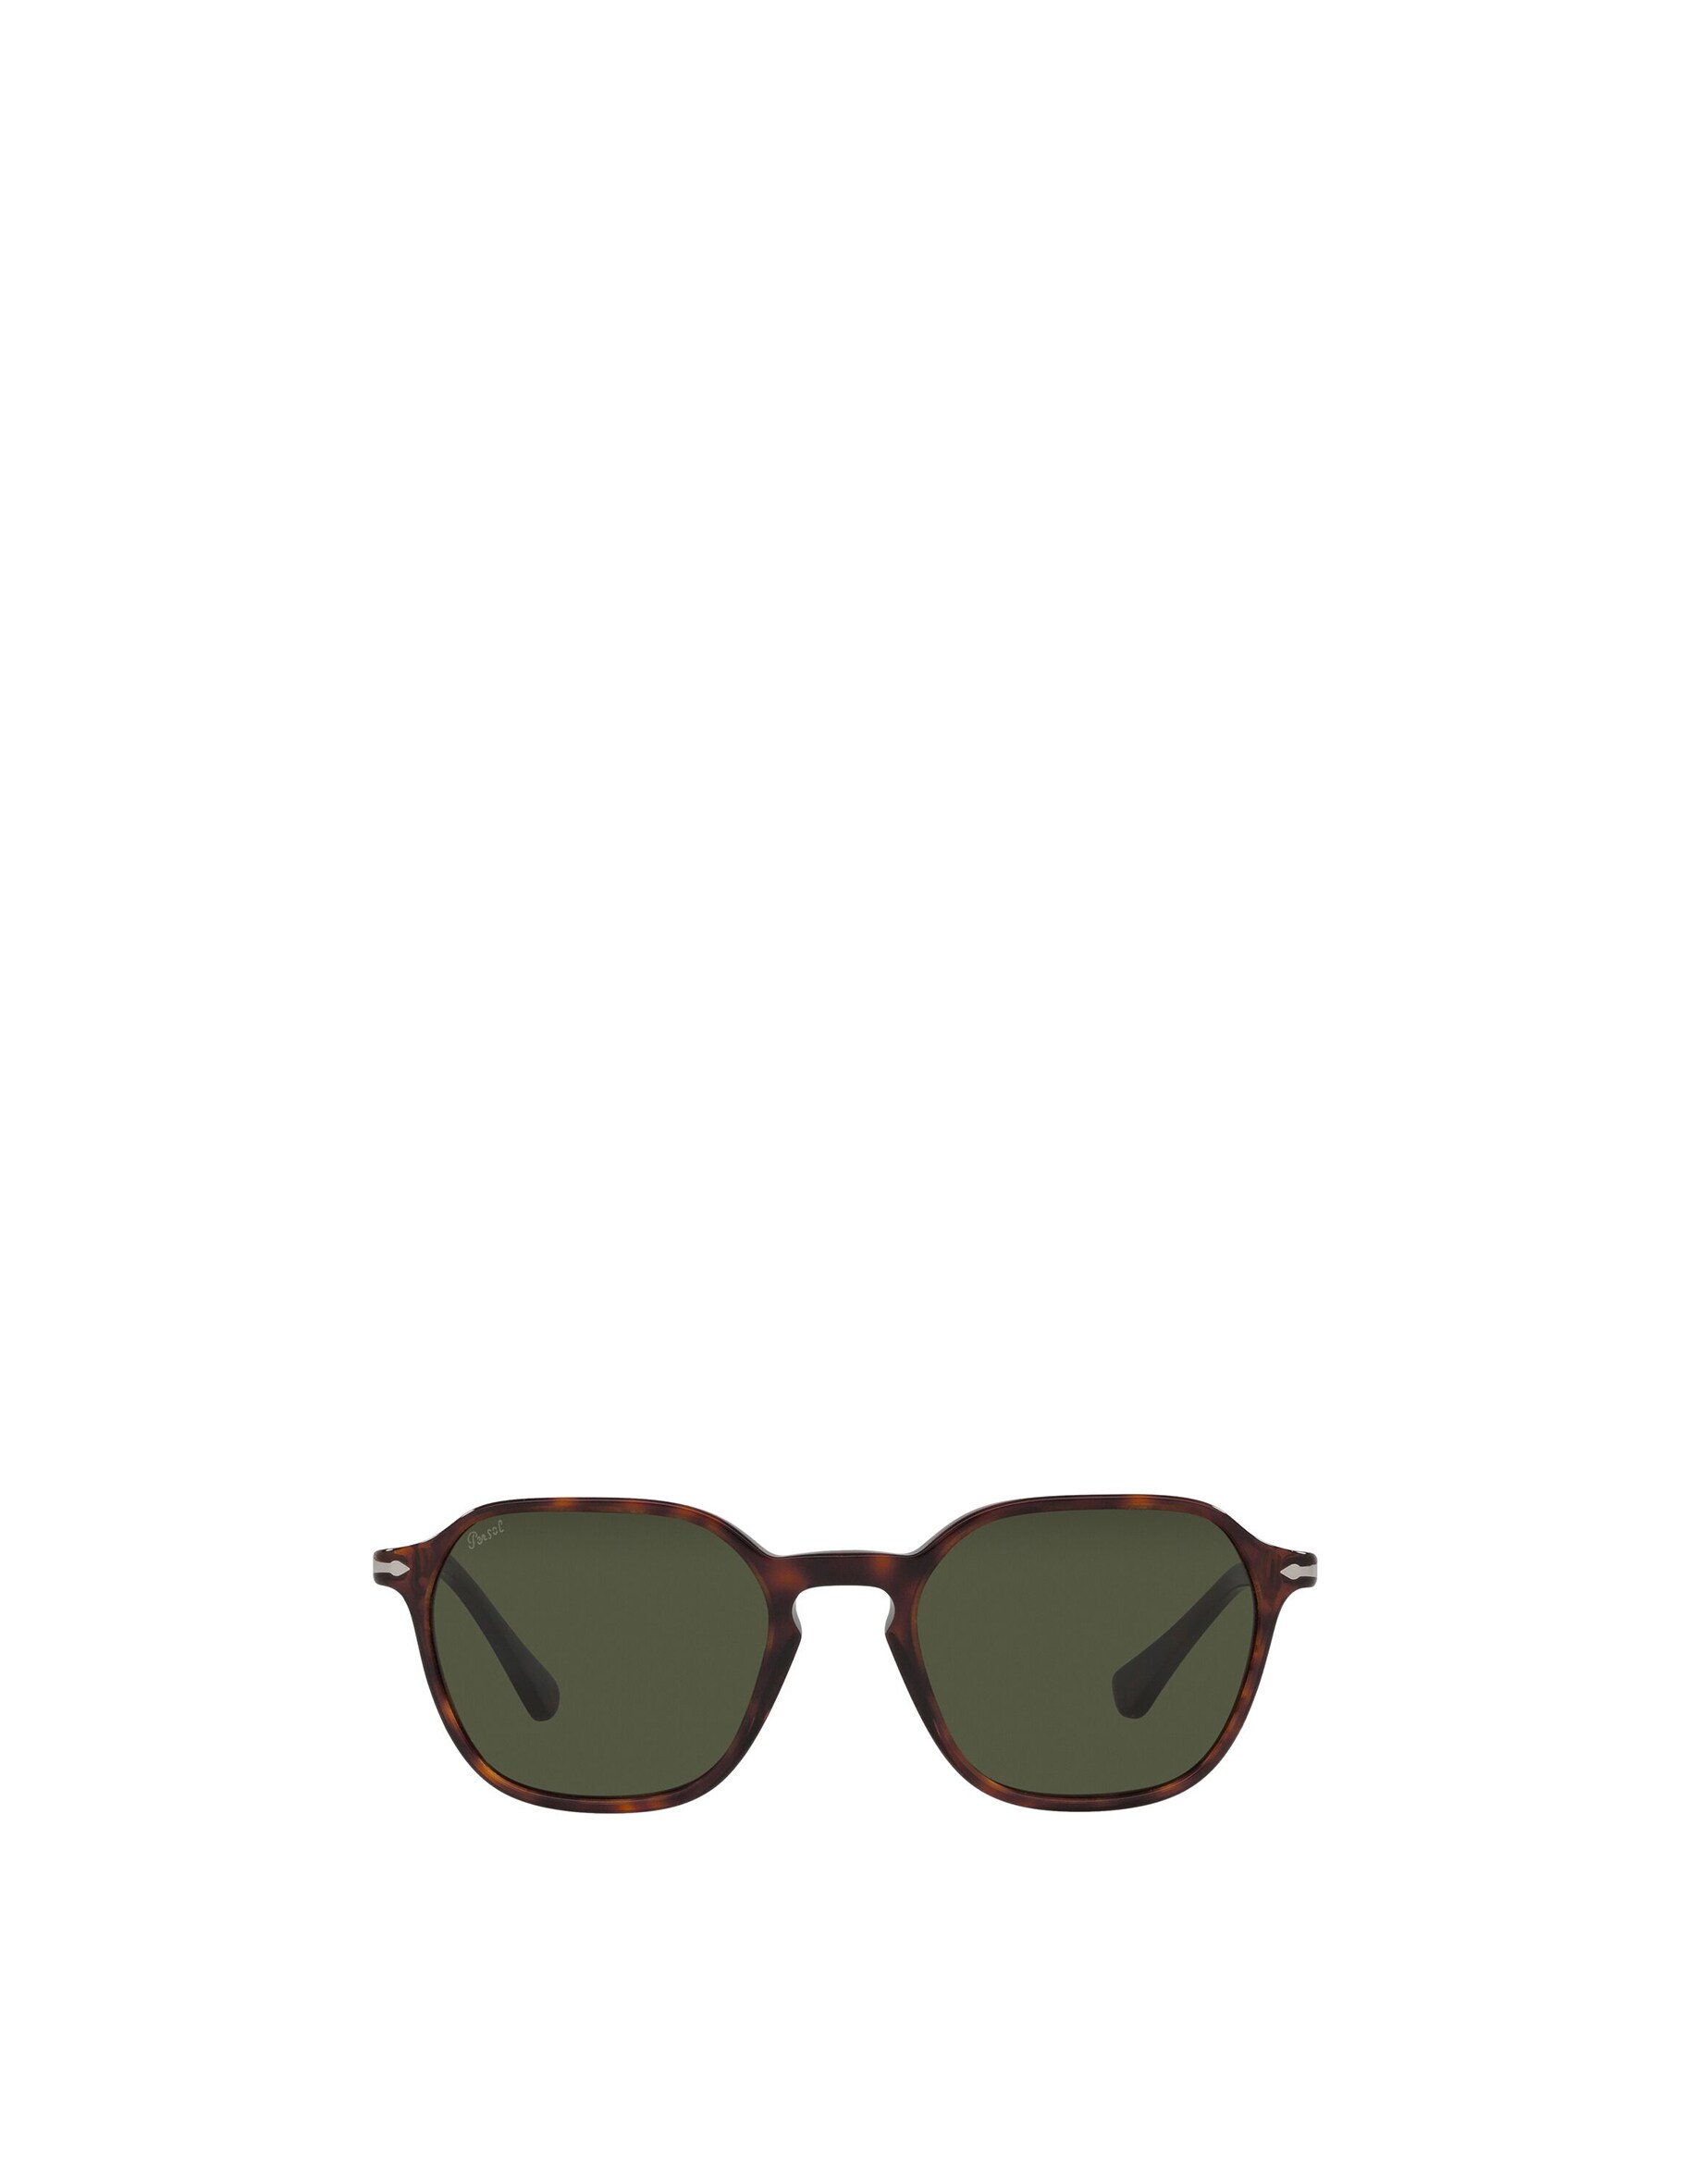 Квадратные солнцезащитные очки Persol, цвет Havana цена и фото